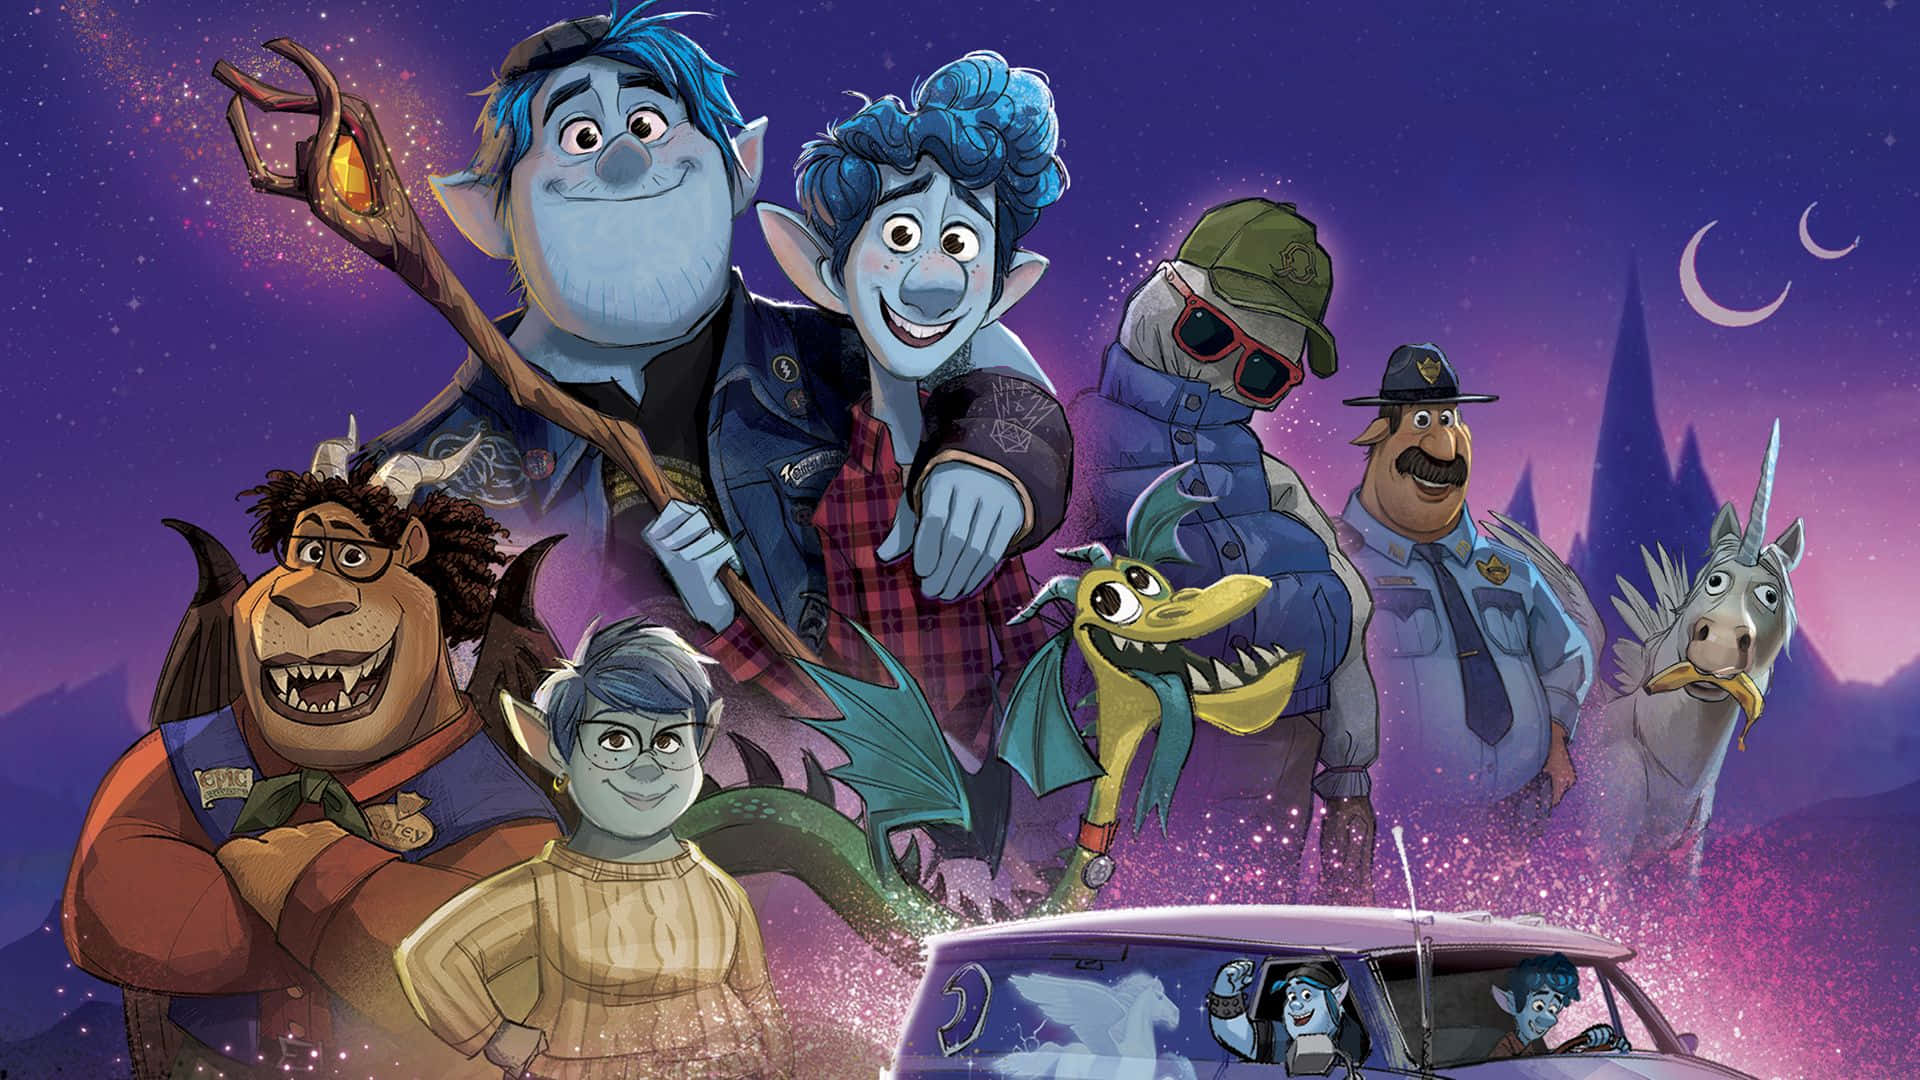 Pixarfejrer Magien Ved Fortælling